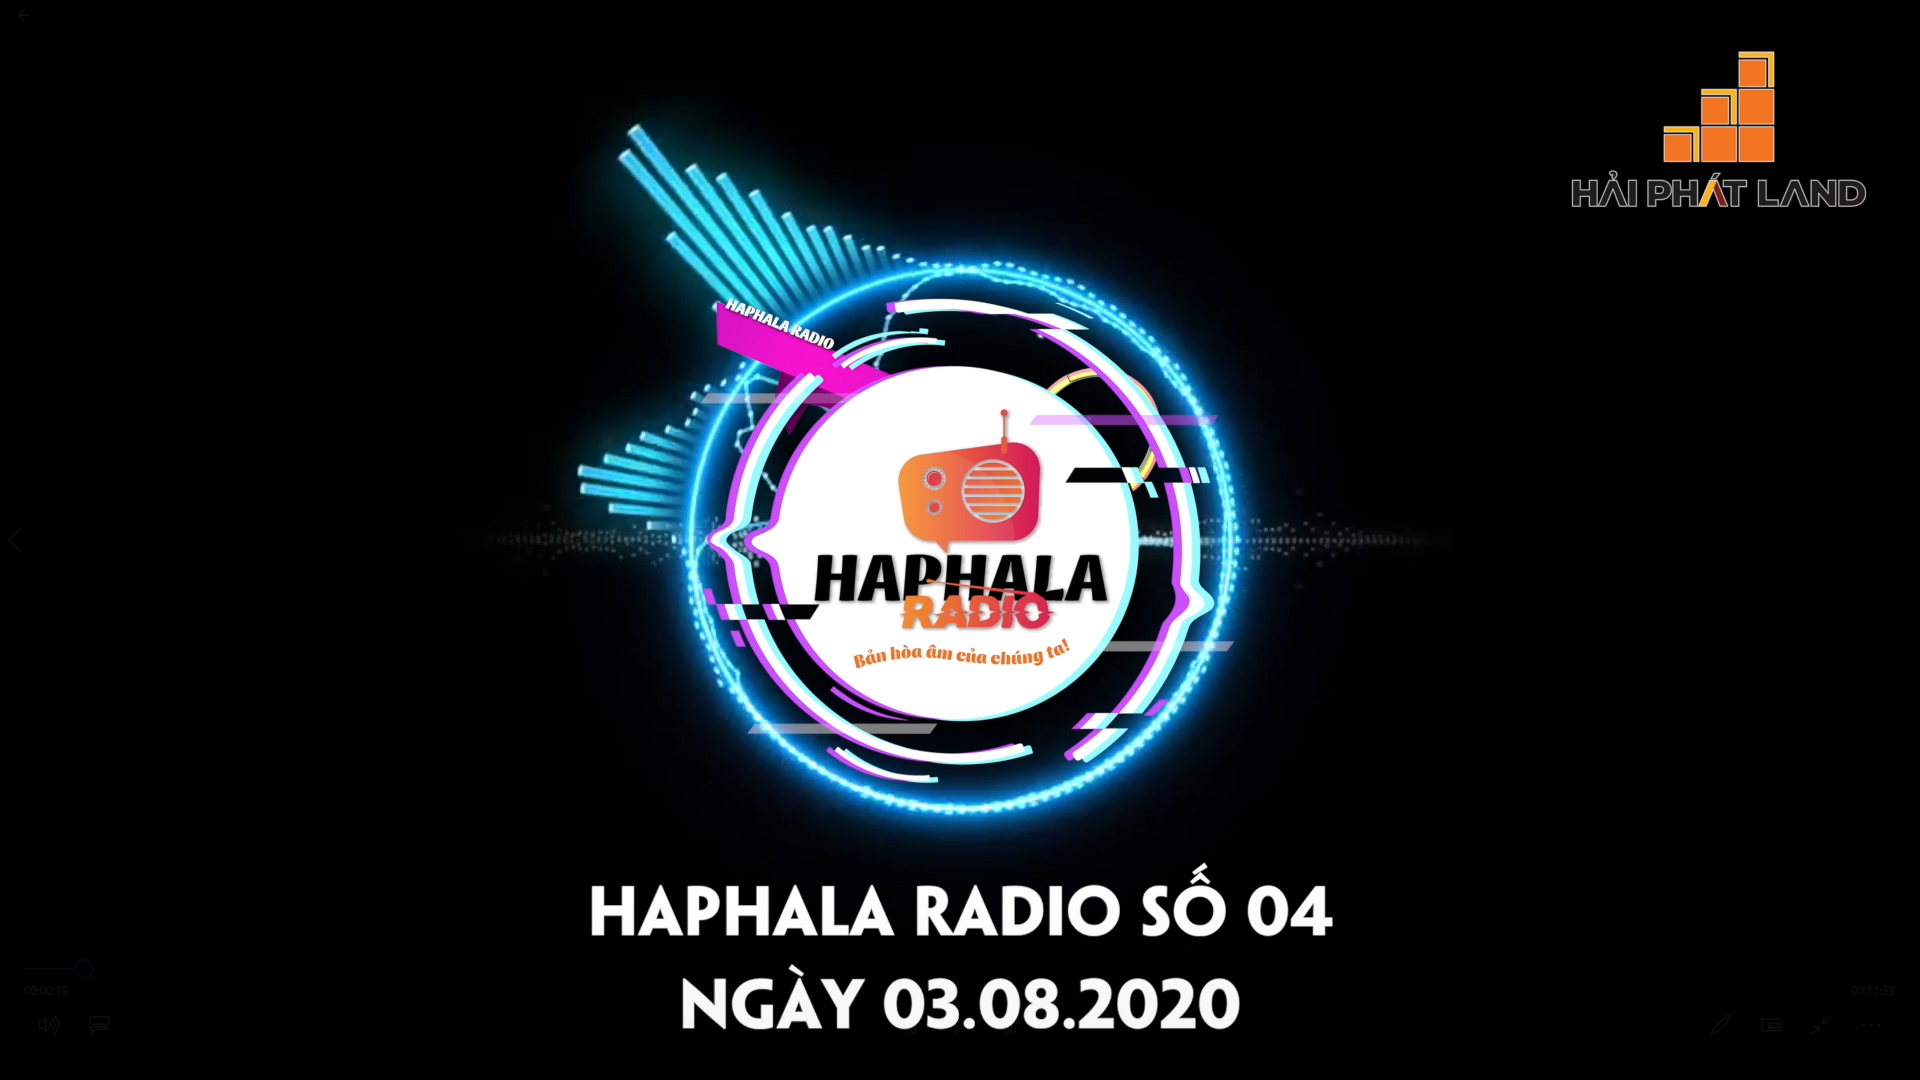 Haphala Radio số 04 | Ngày 03.08.2020